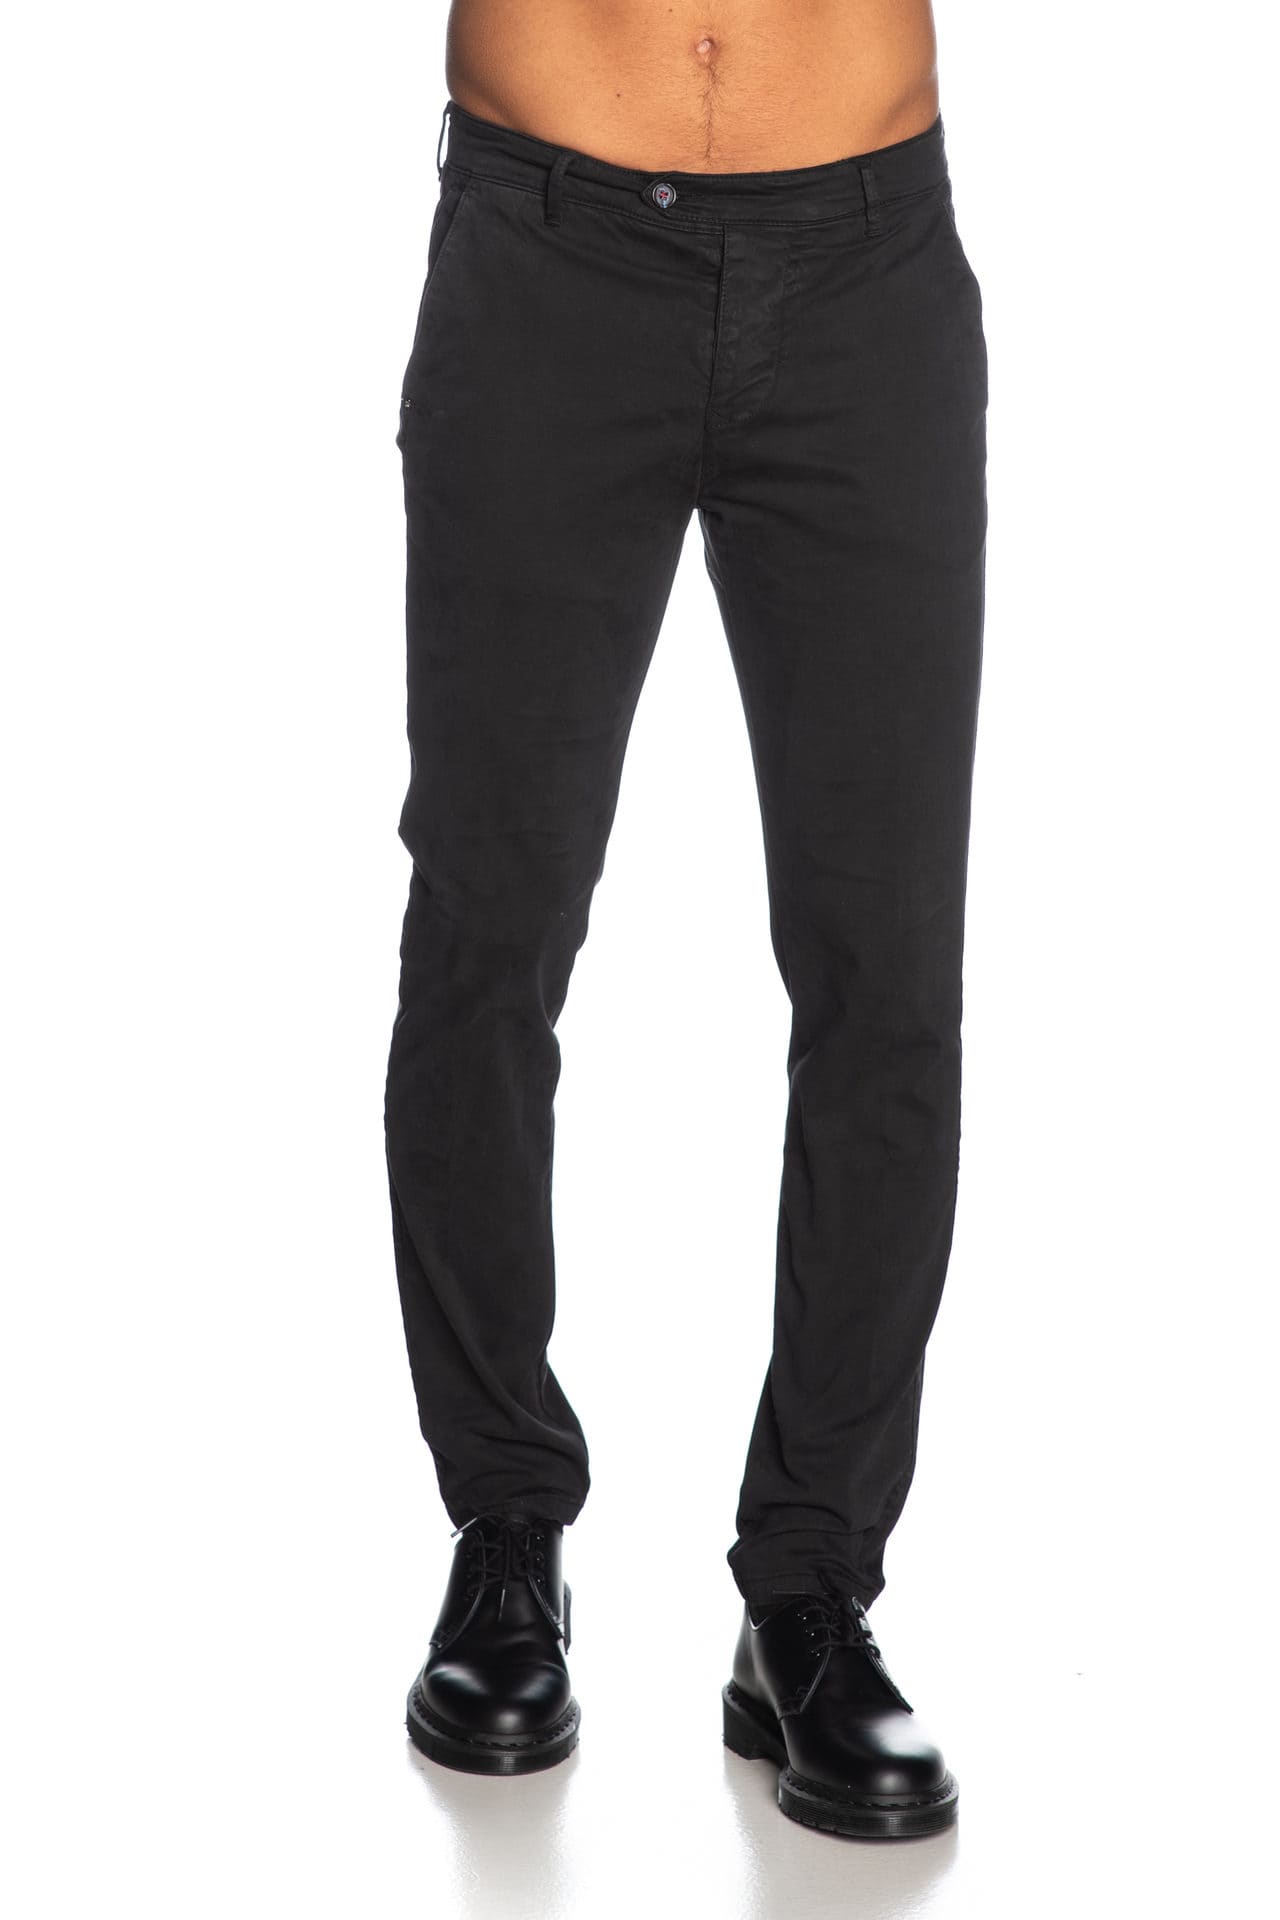 Pantaloni tasca america in cotone elasticizzato SUPERSLIM - nero - ZERO/CONSTRUCTION